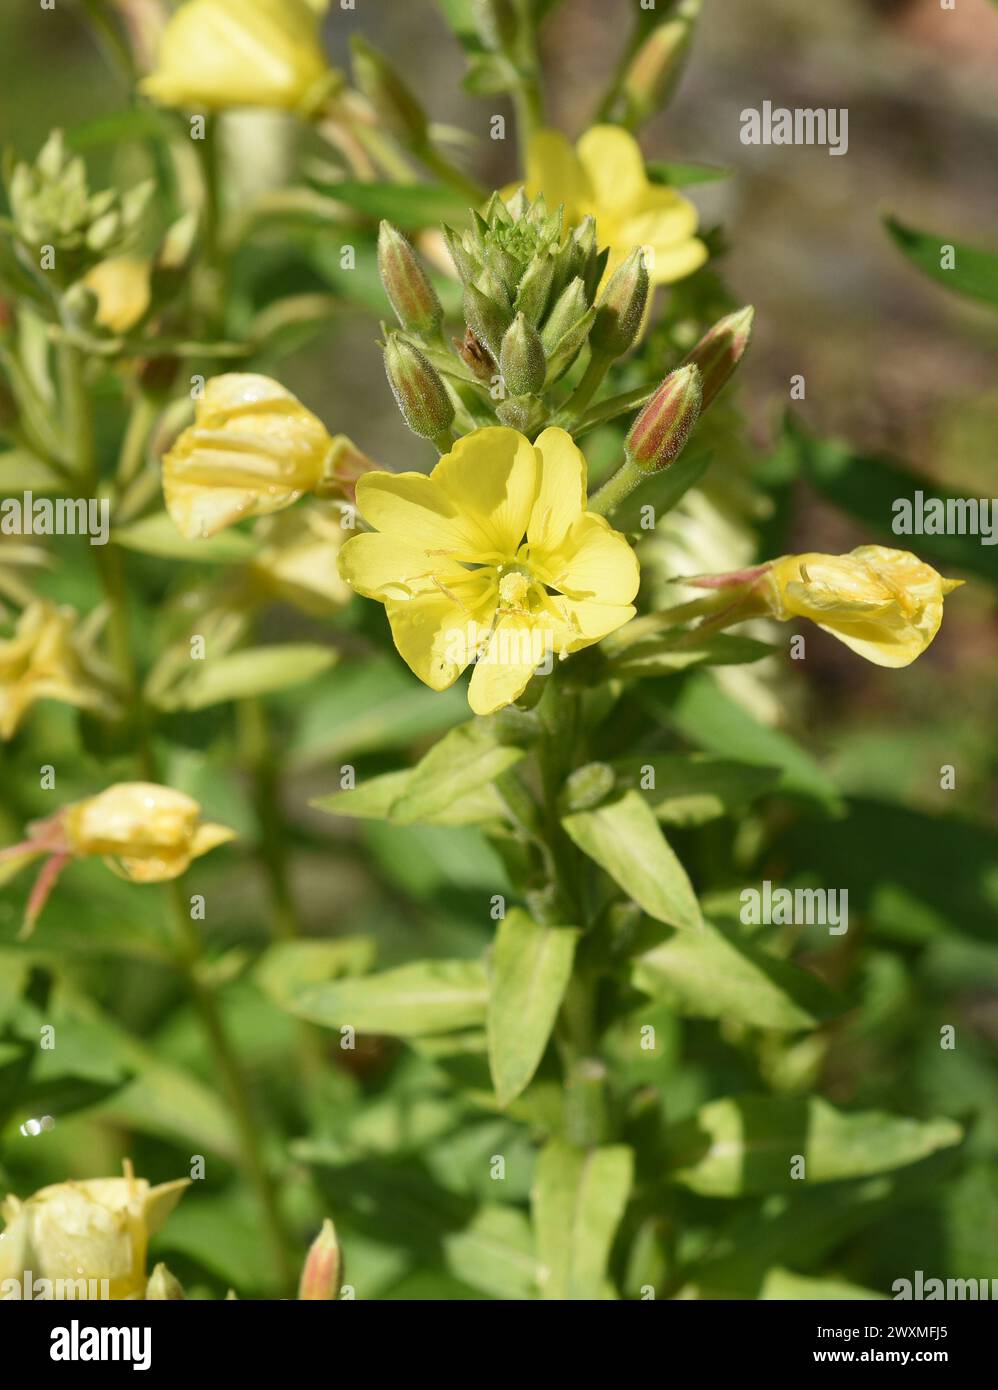 Nachtkerze, Oenothera biennis ist eine wichtige Heilpflanze mit gelben Blueten. Nachtkerze, Oenothera biennis ist eine wichtige Heilpflanze wi Stockfoto